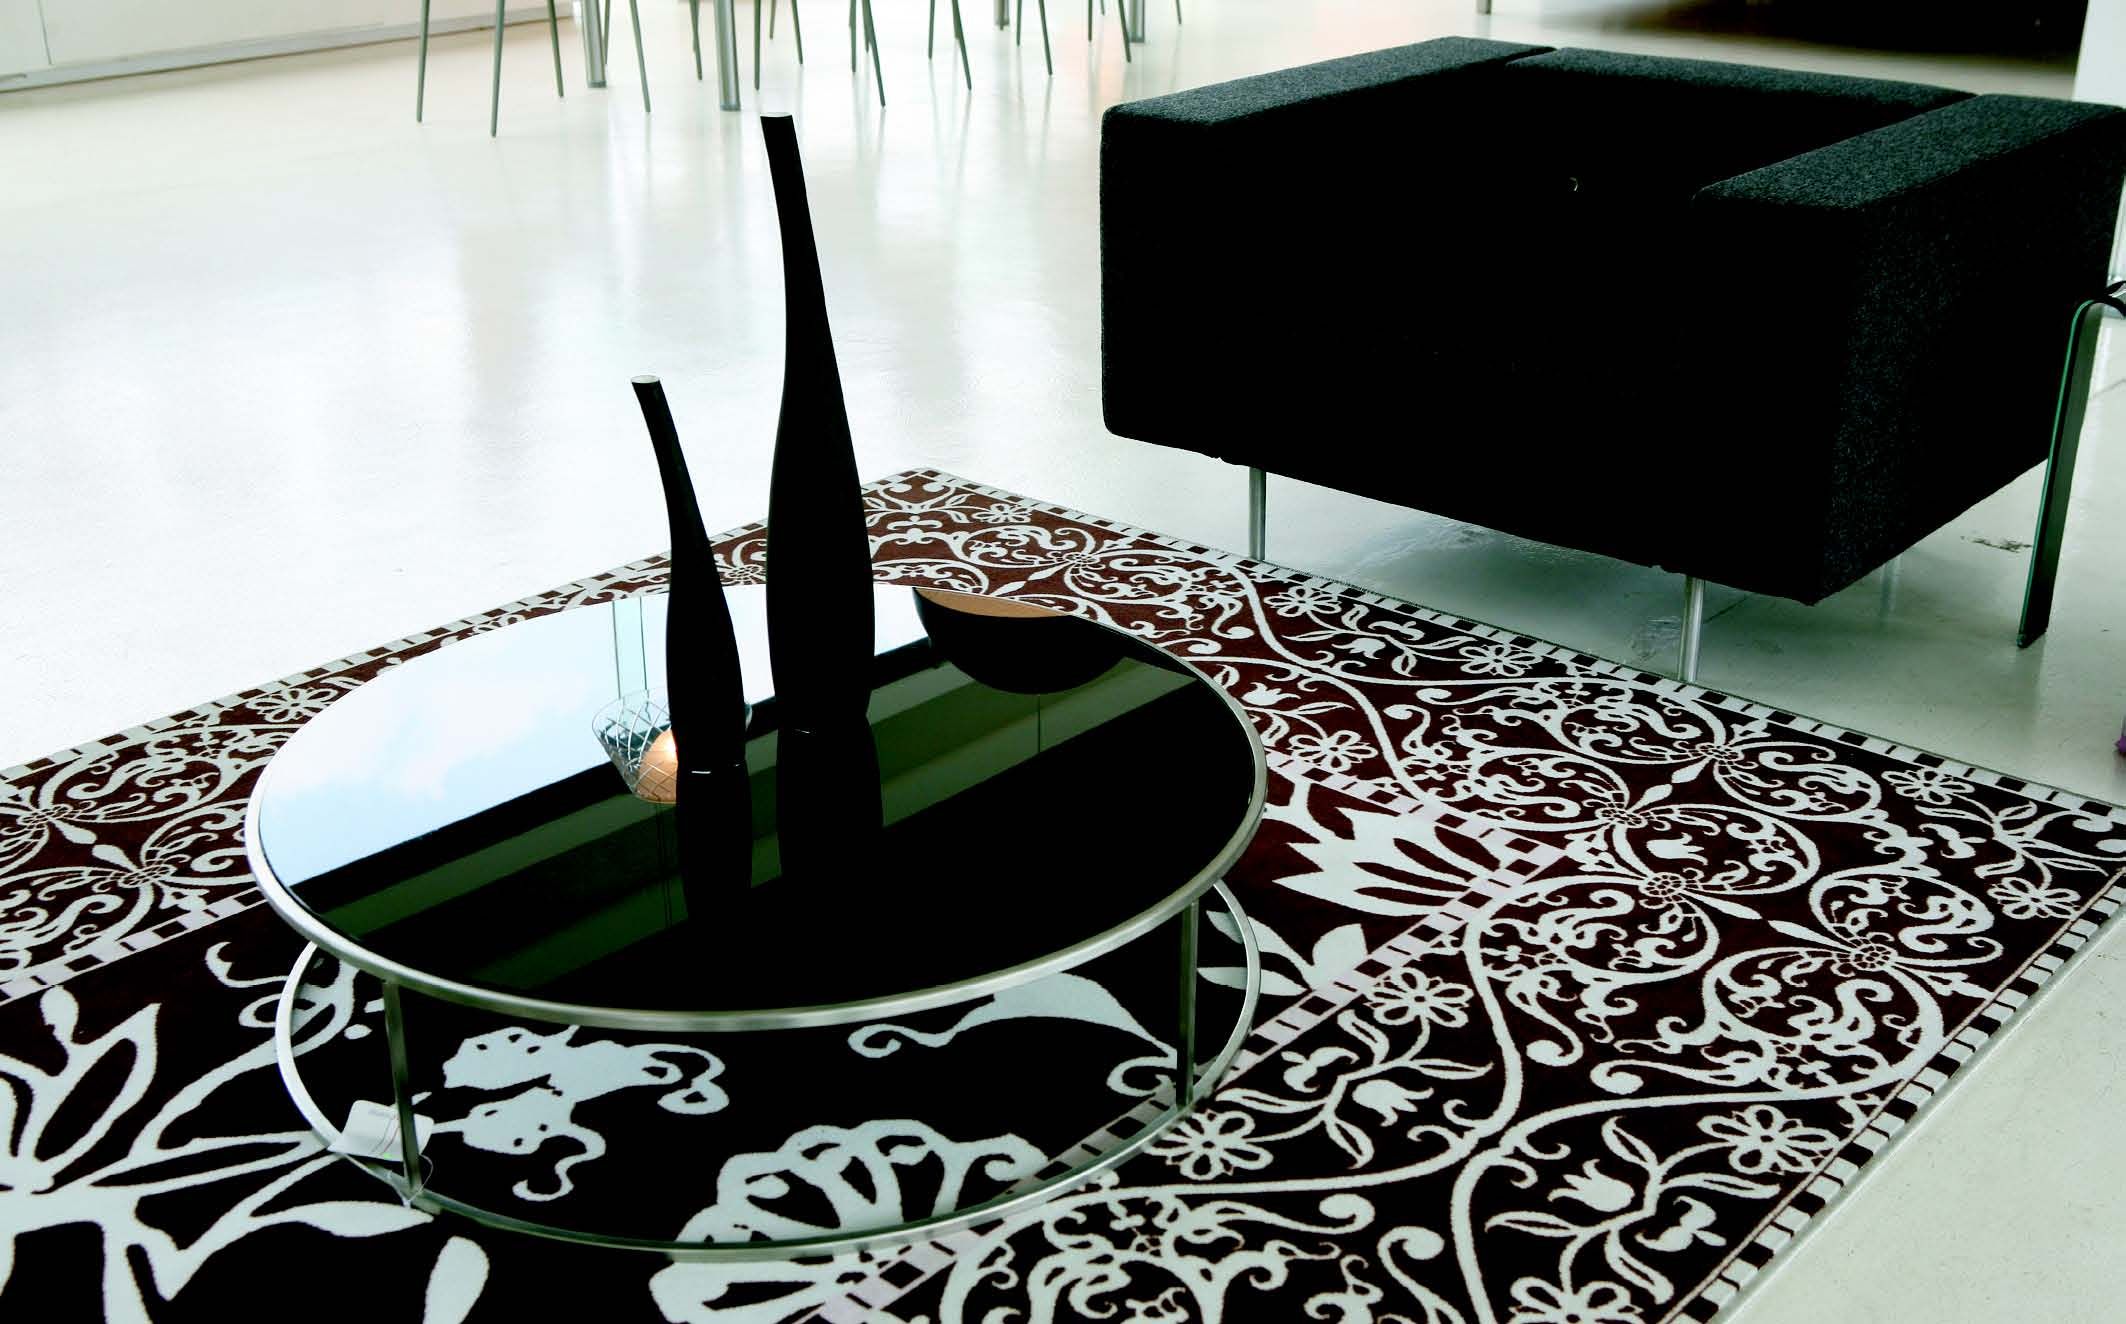 Motif sulur dengan dasar warna gelap memberi kesan elegan di lantai putih. 